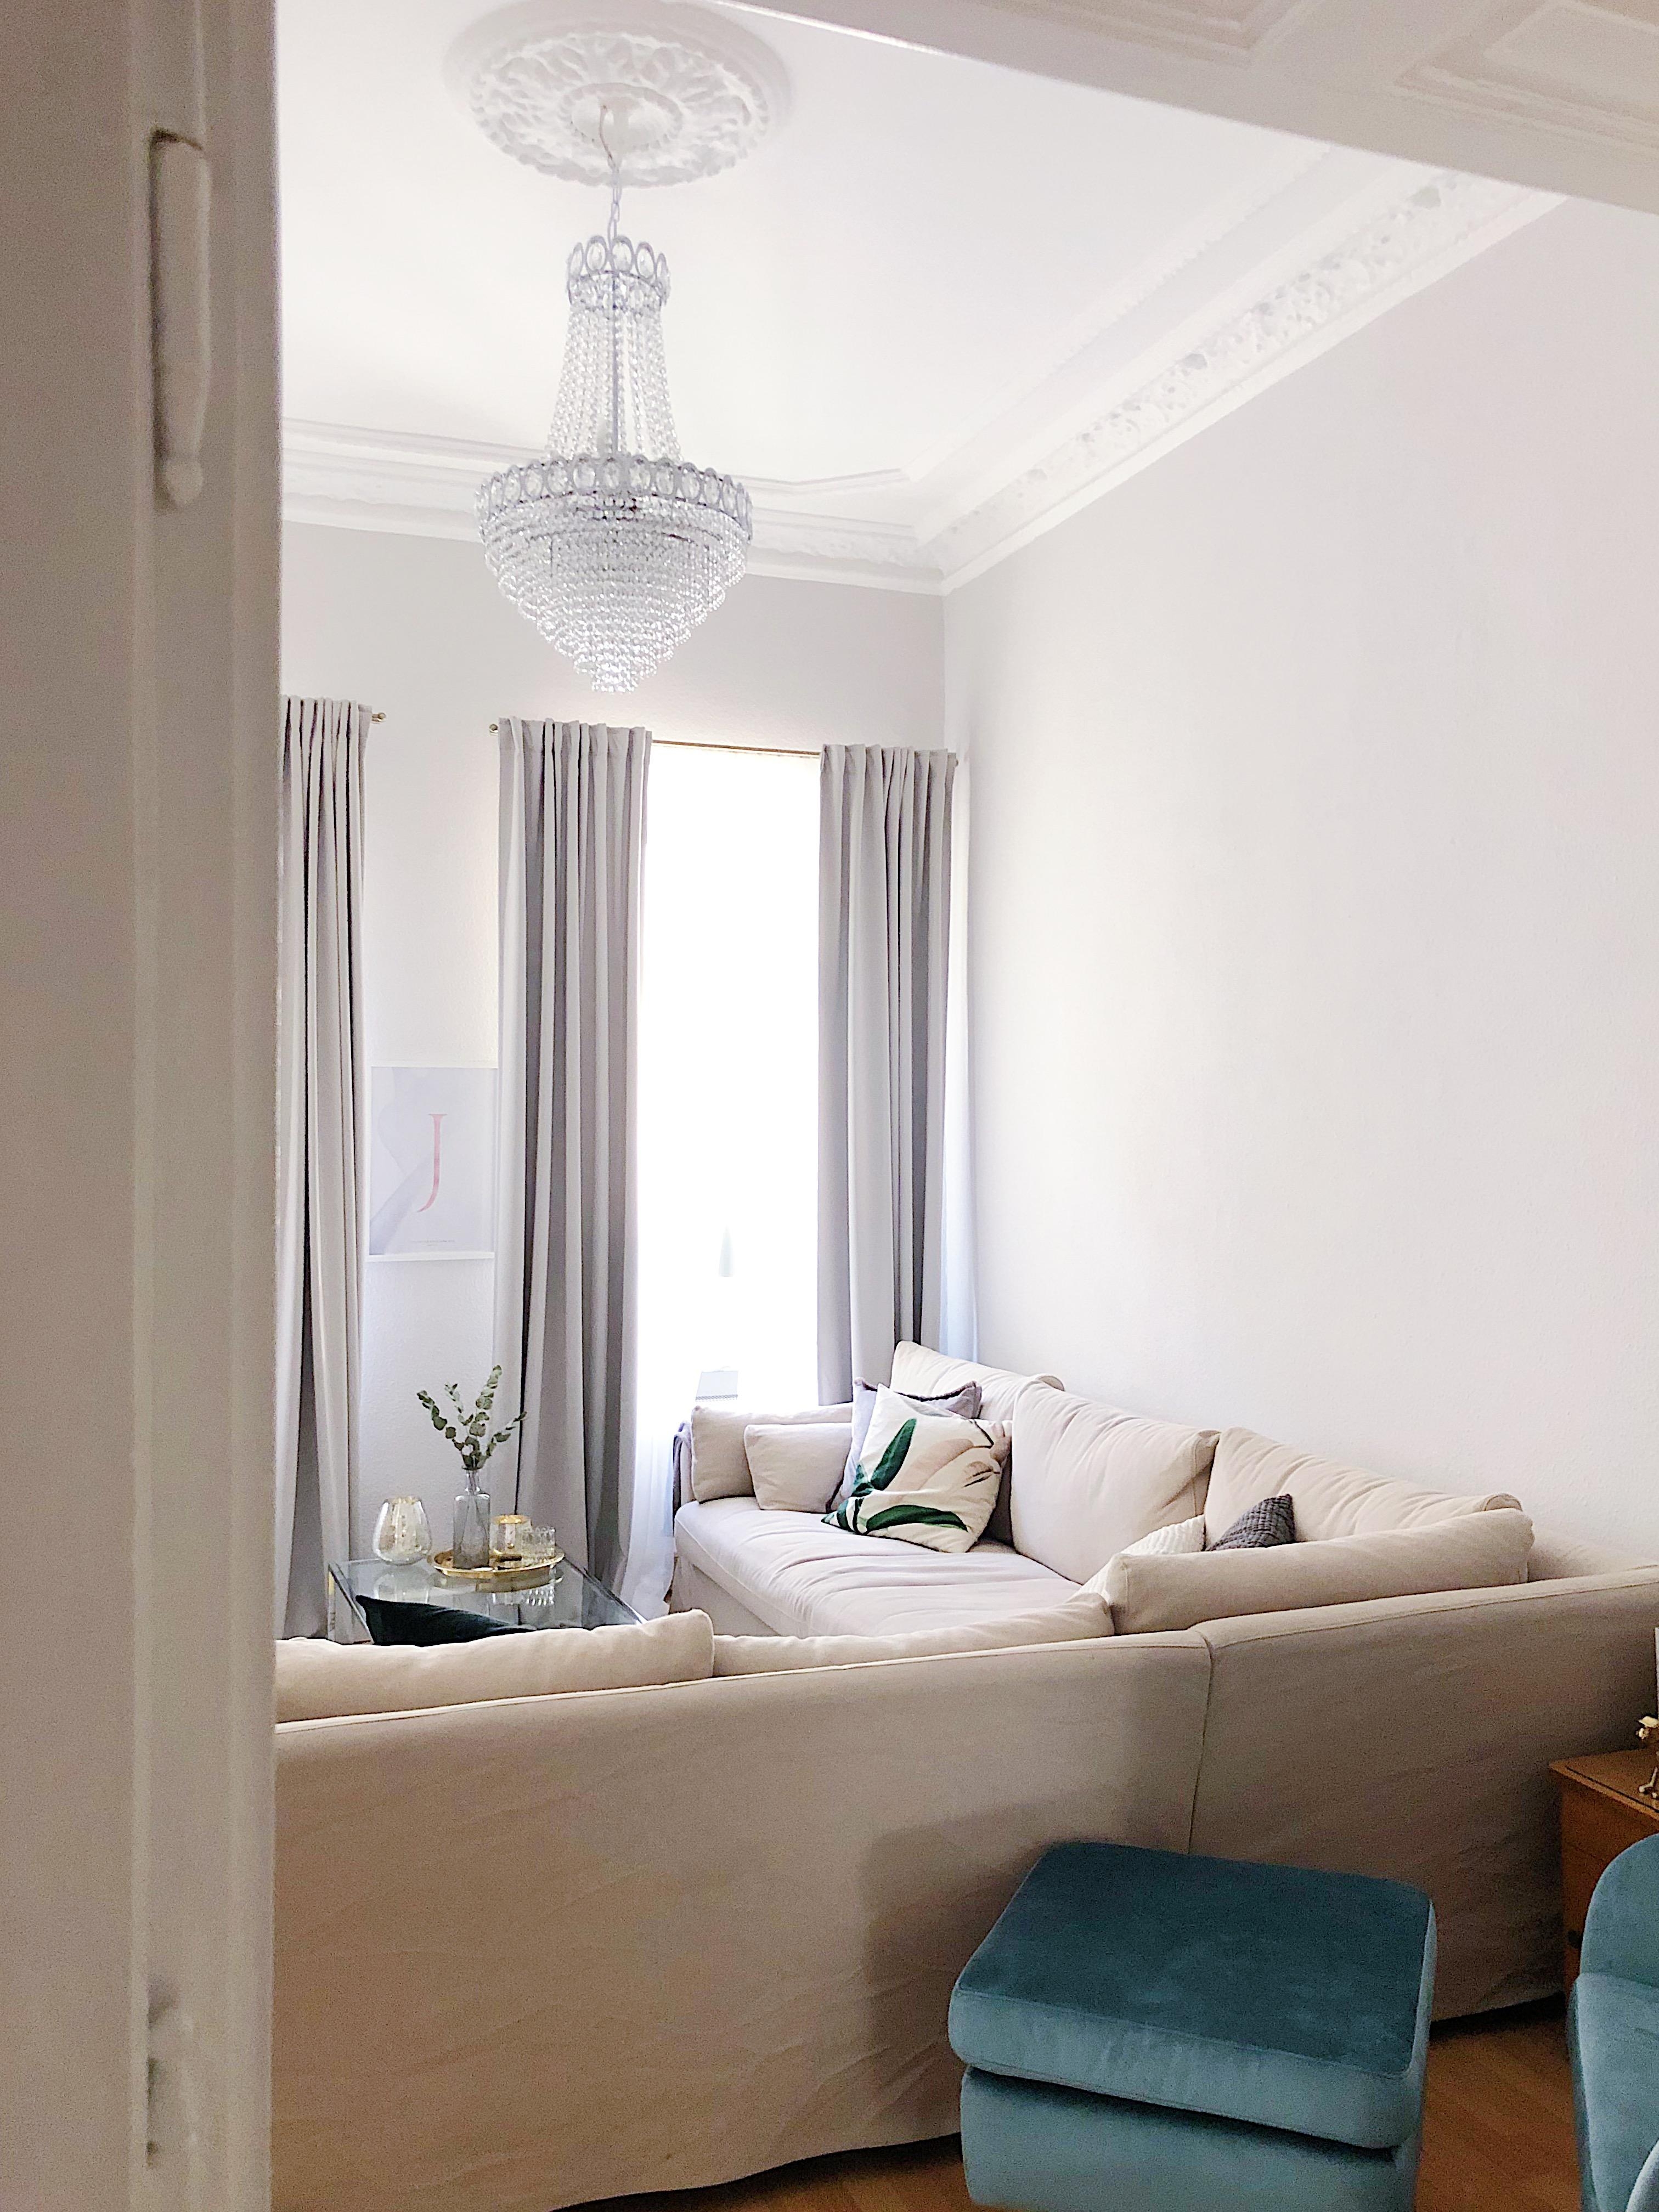 Frisch verliebt in unseren neuen Kronleuchter. #interior #wohnzimmer #kronleuchter #ikea #interiorliebling